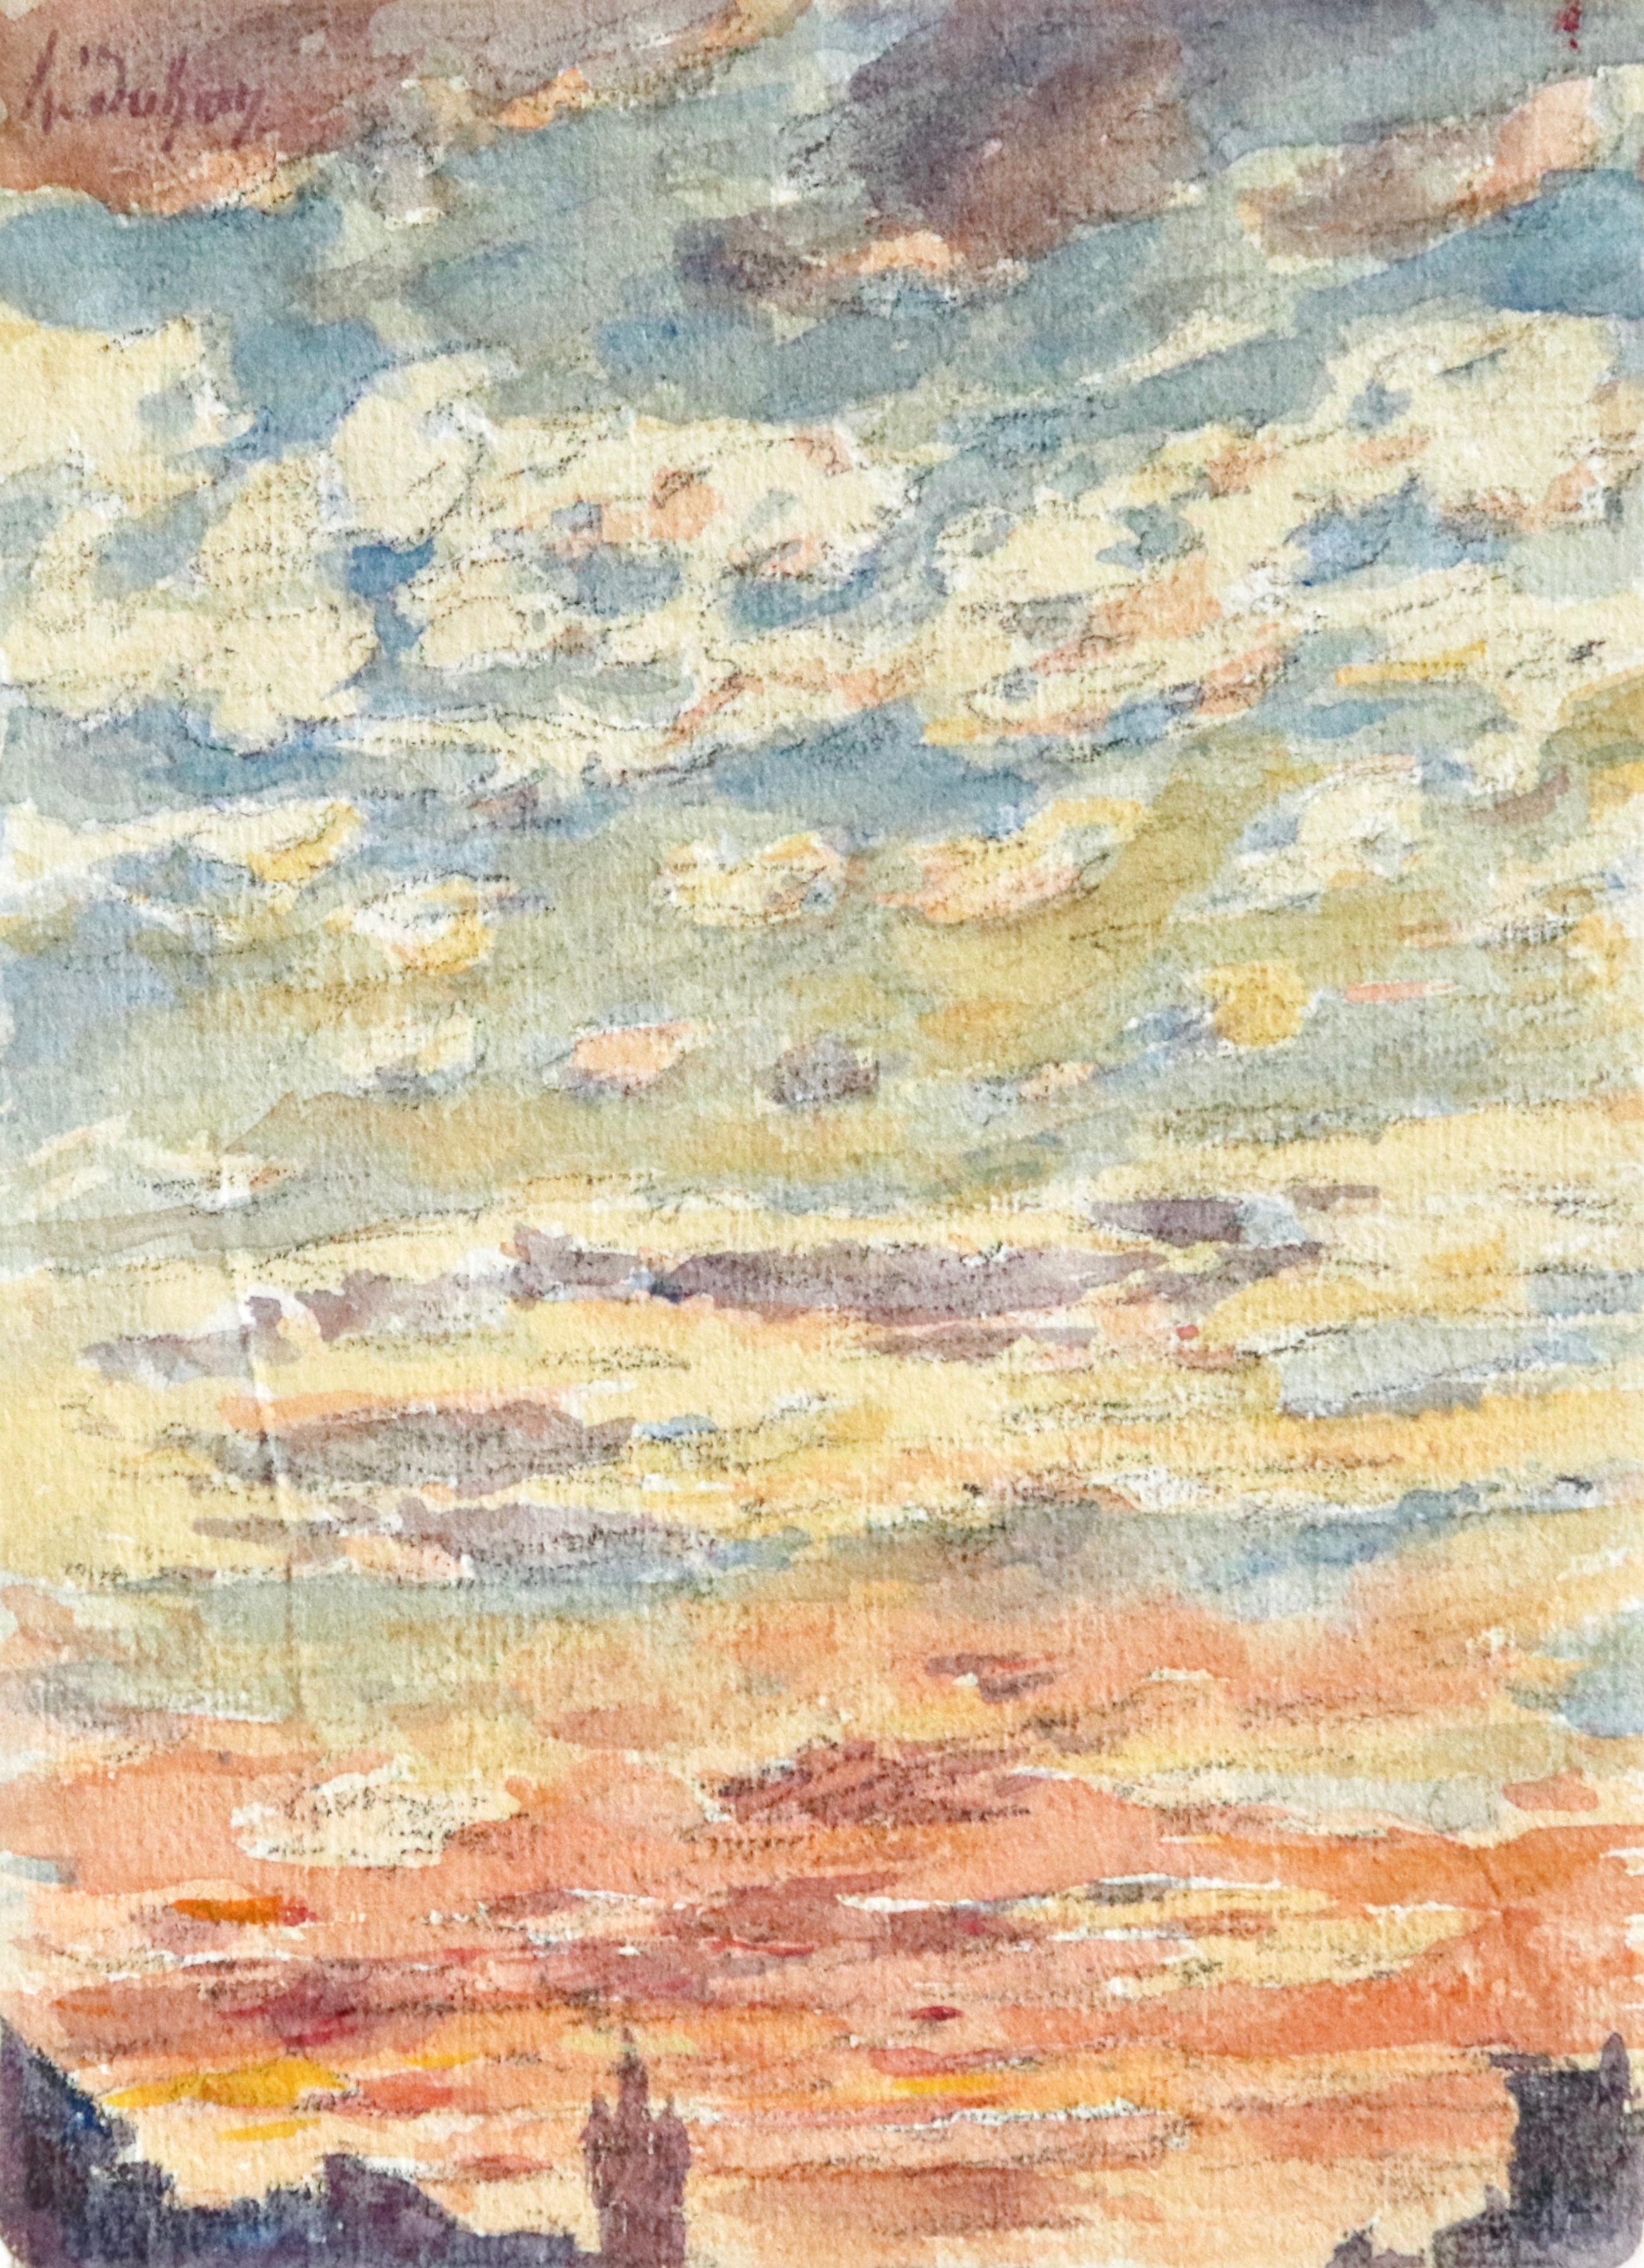 Coucher du Soleil - 19th Century Watercolor, Sunset Sky Landscape by Henri Duhem